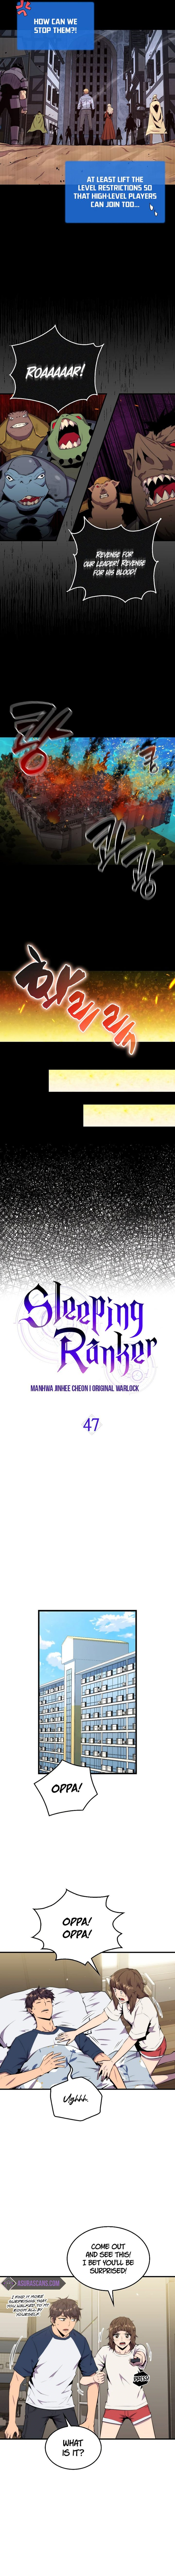 sleeping_ranker_47_3